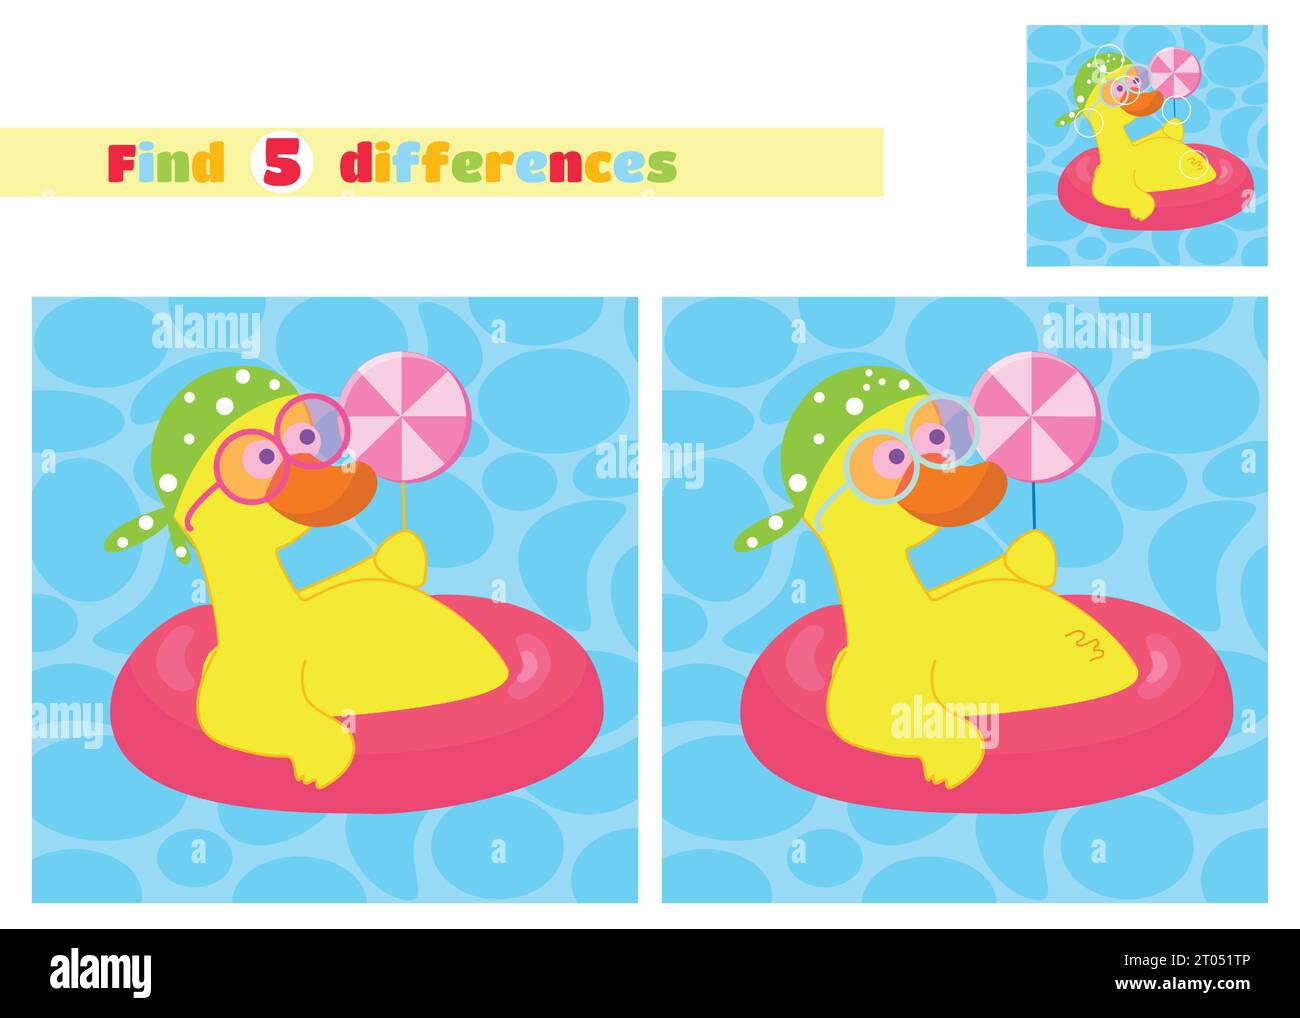 Finden Sie die Unterschiede. Eine Ente in einem Taschentuch und einer Brille schwimmt mit einem Lutscher auf einem aufblasbaren Kreis im Cartoon-Stil auf dem Wasser. Stock Vektor